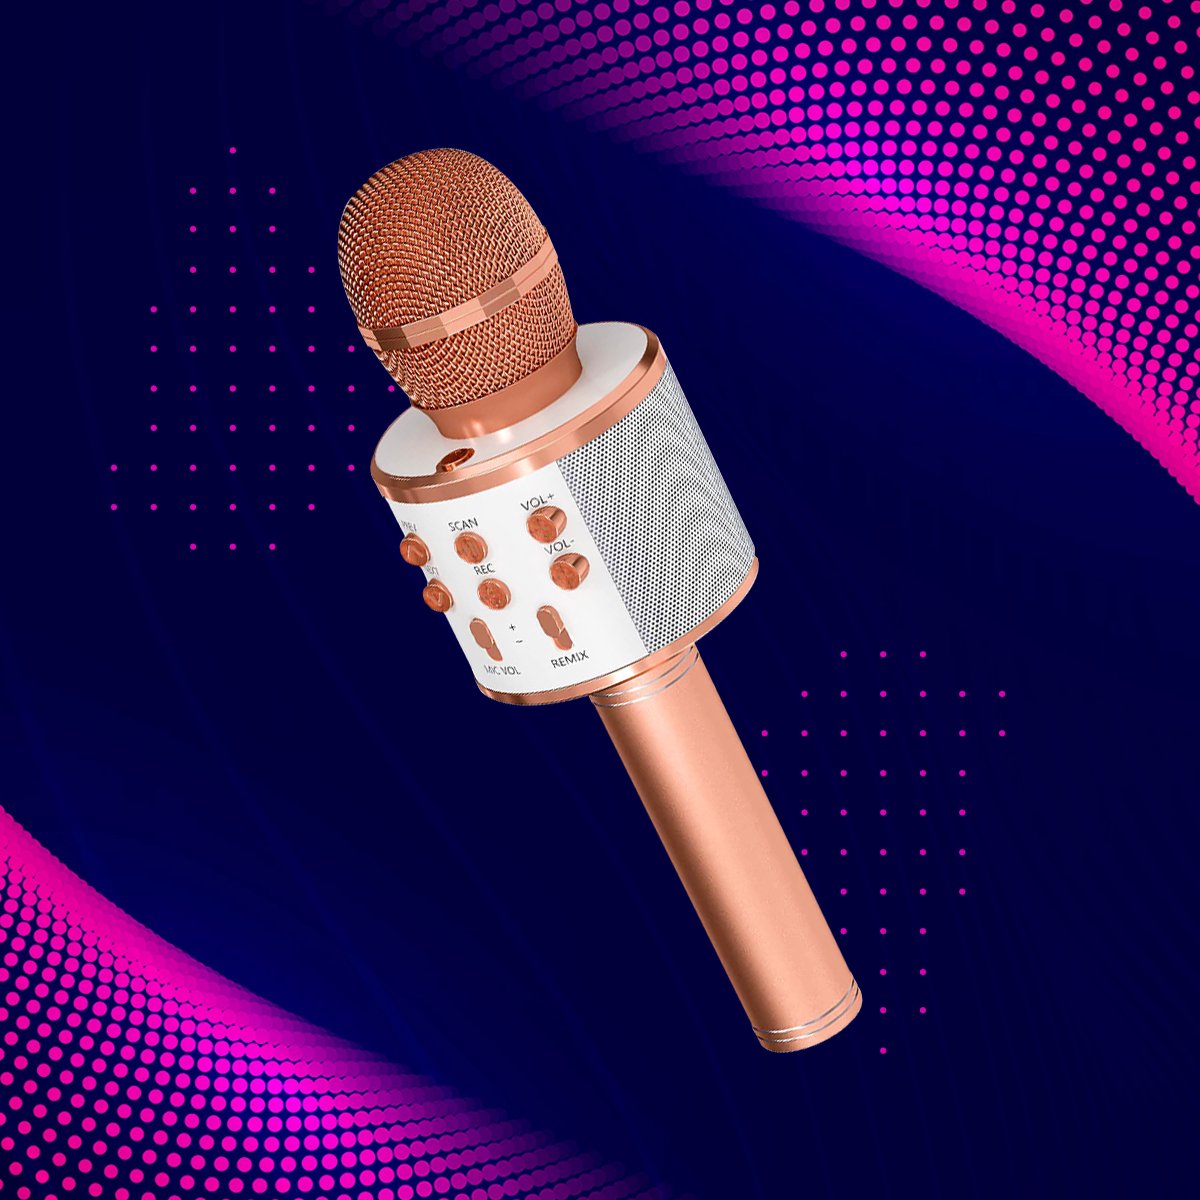 Generic Microphone karaoké Bluetooth Avec lumières LED - Rose à prix pas  cher